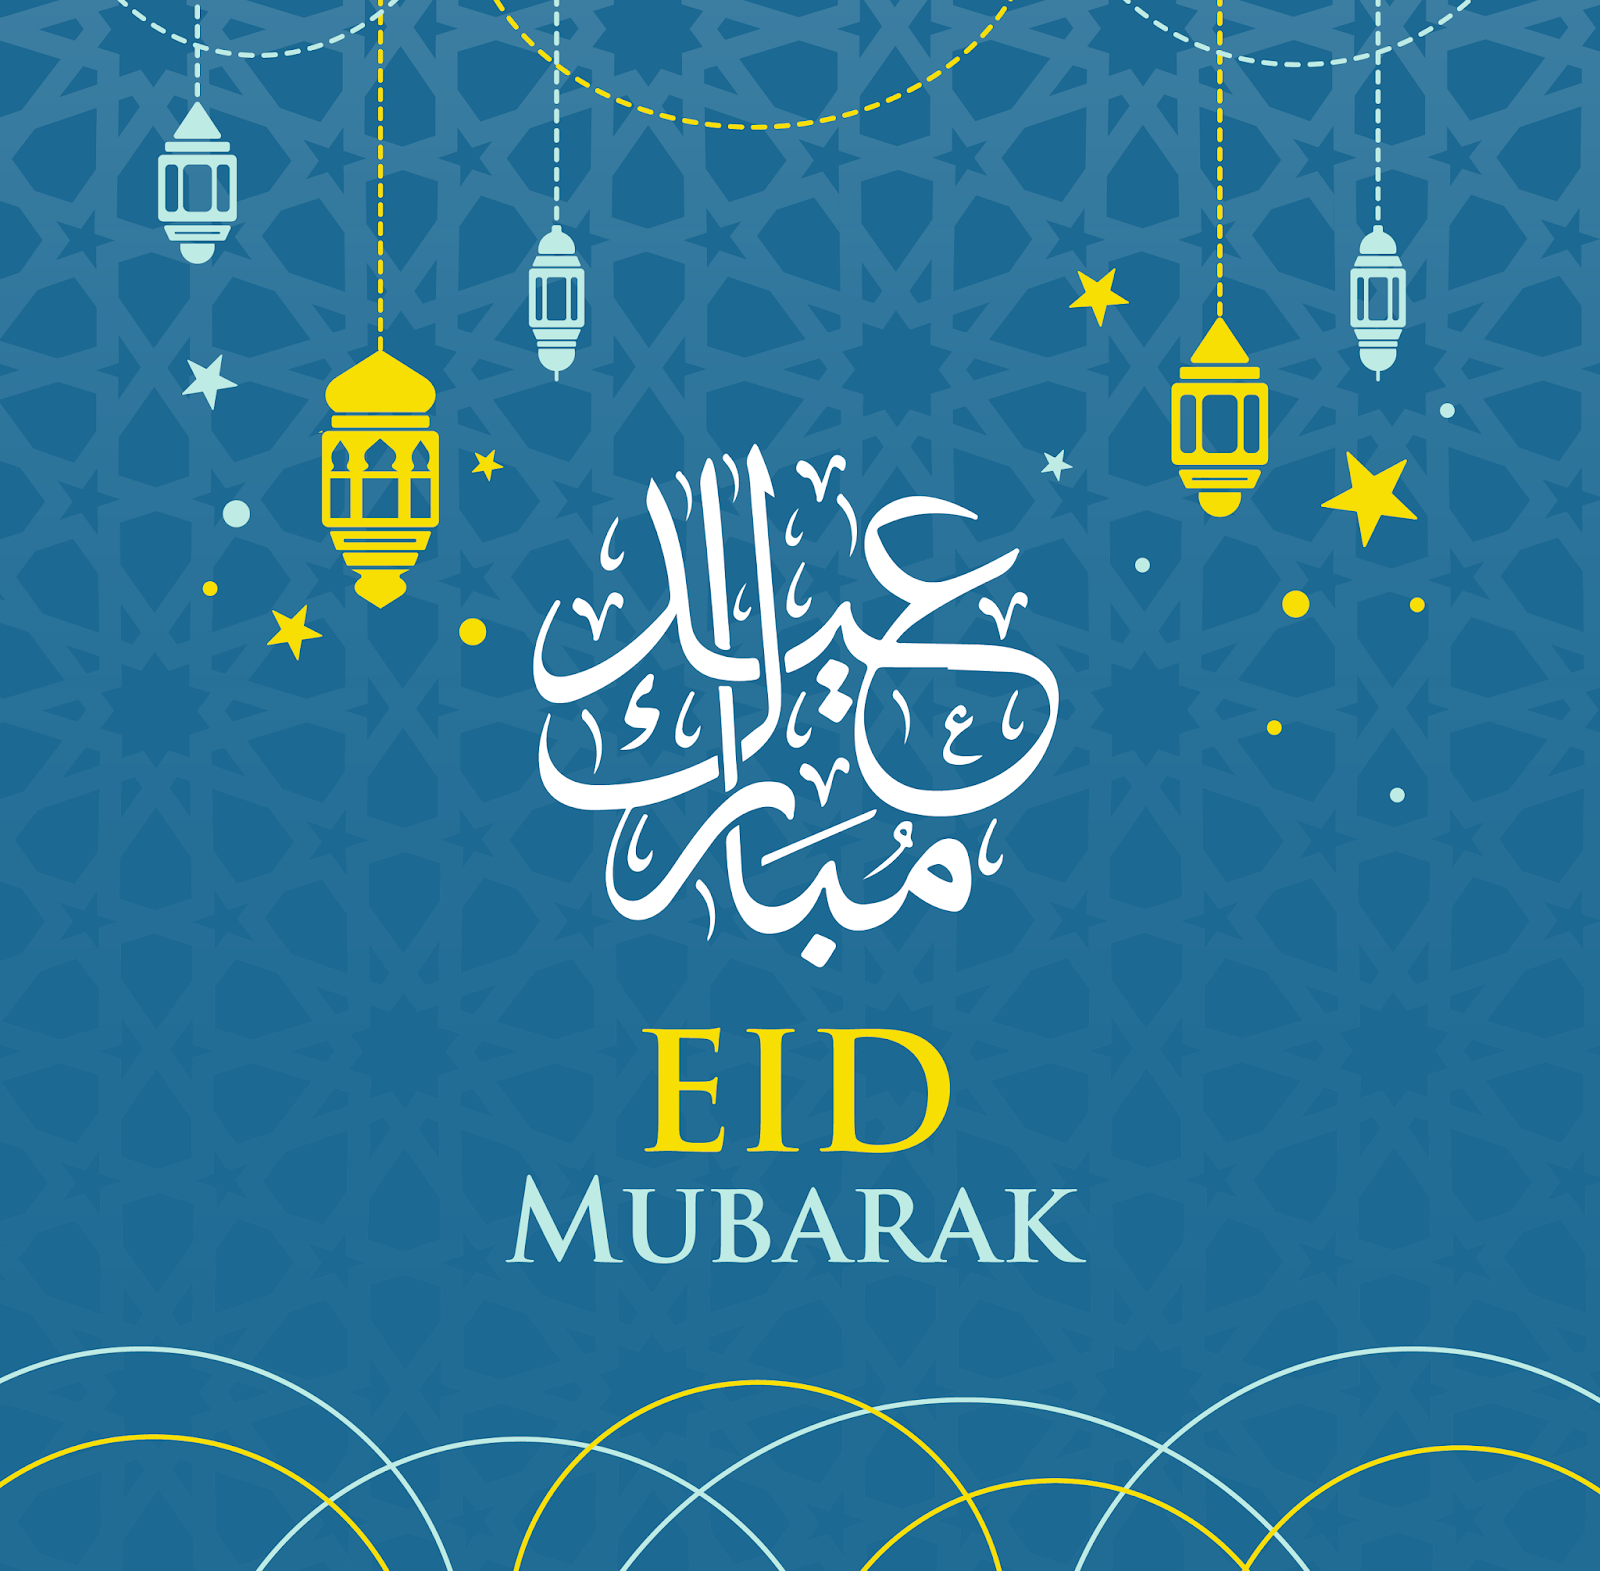 Impressive Eid Mubarak 2020 Wallpaper Images & Pics HD ...